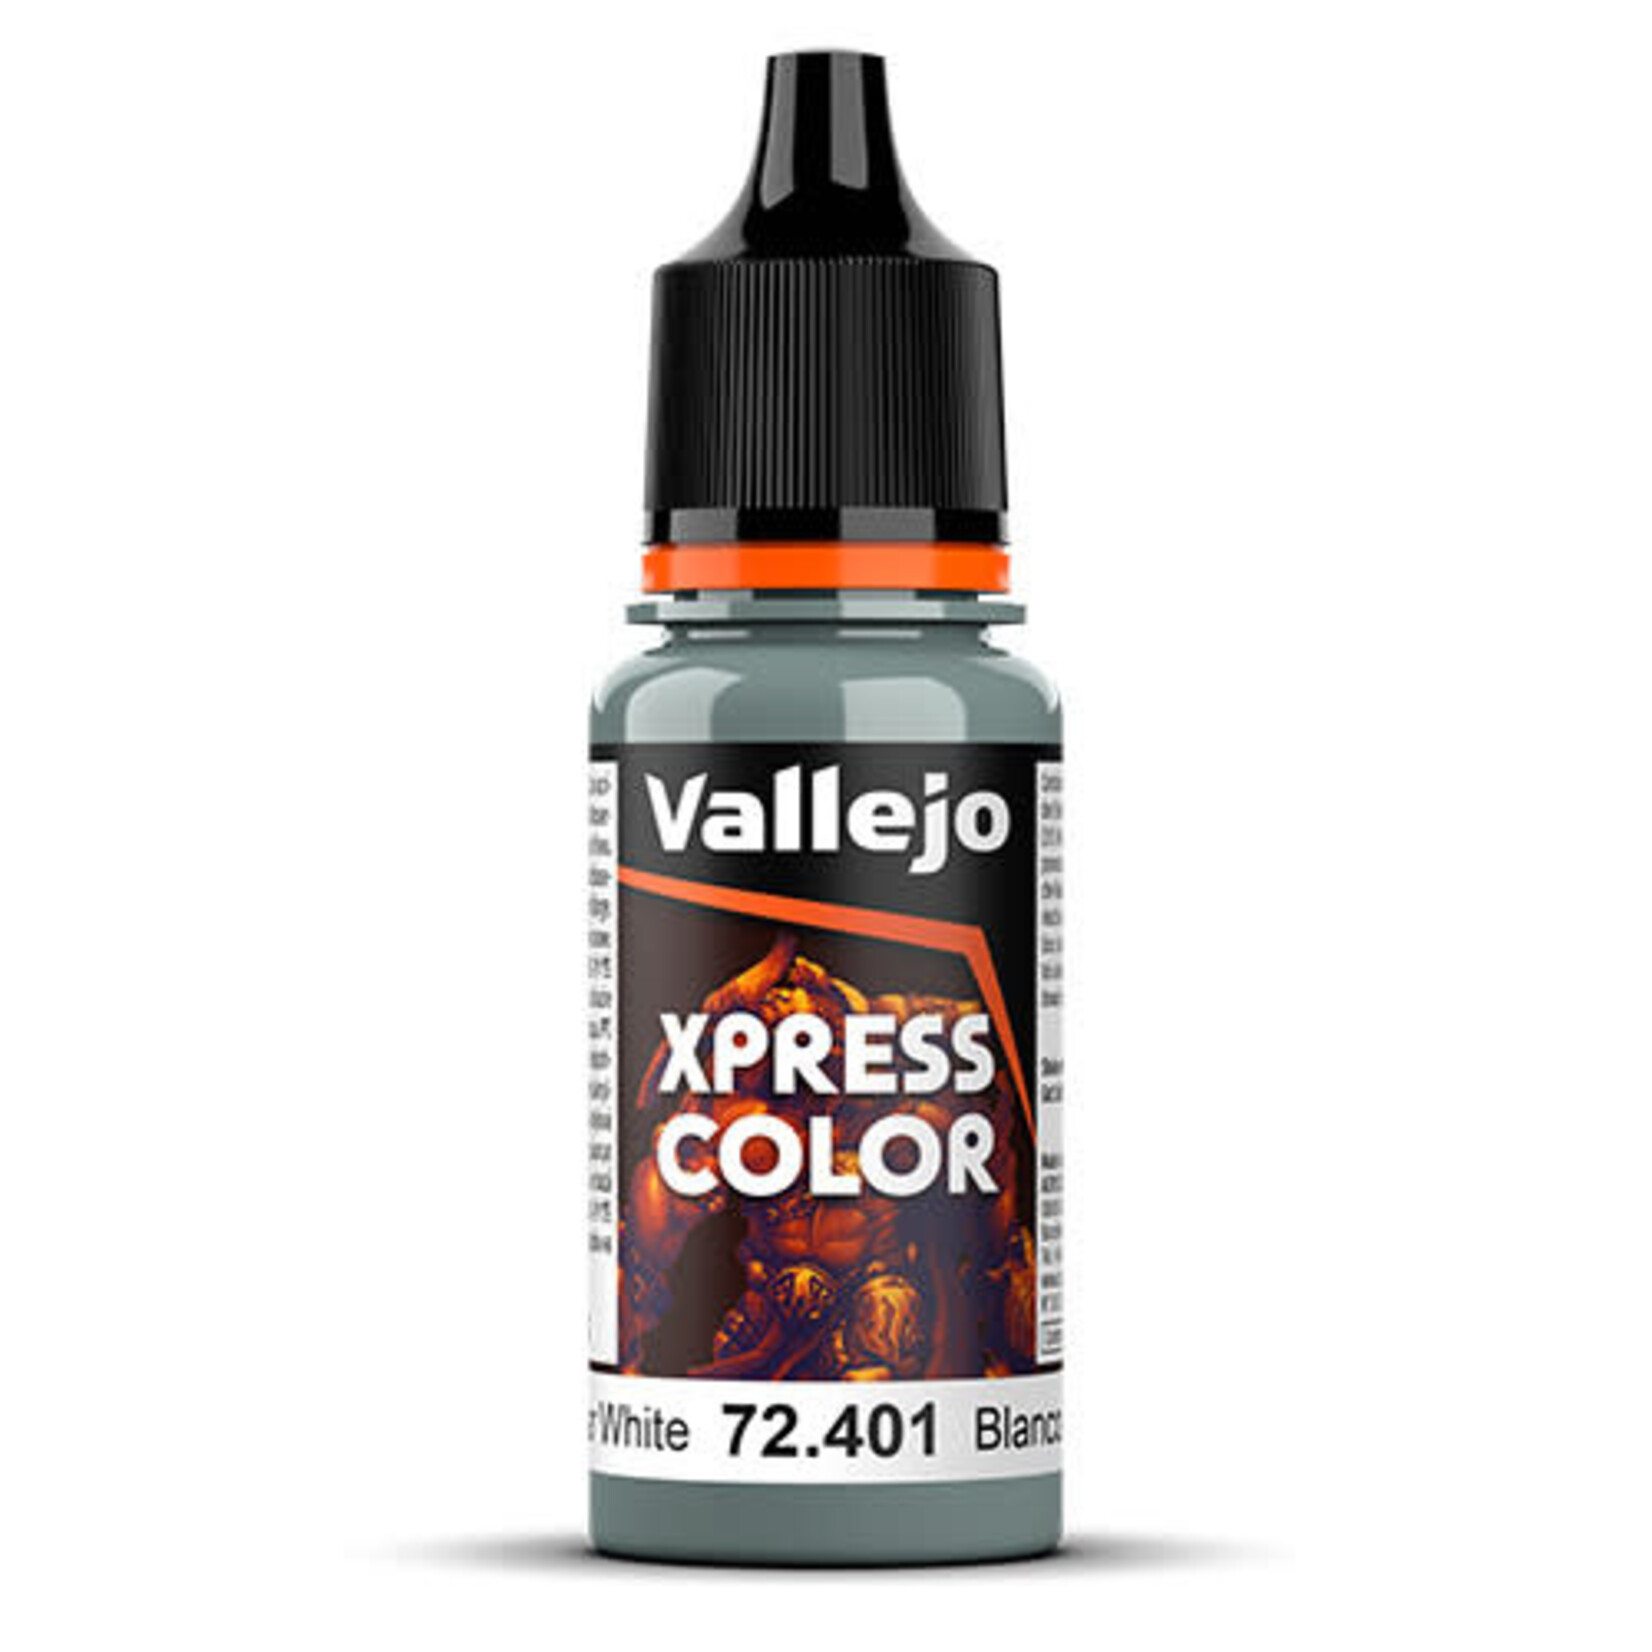 Acrylicos Vallejo VGC Xpress Color Templar White 18ml